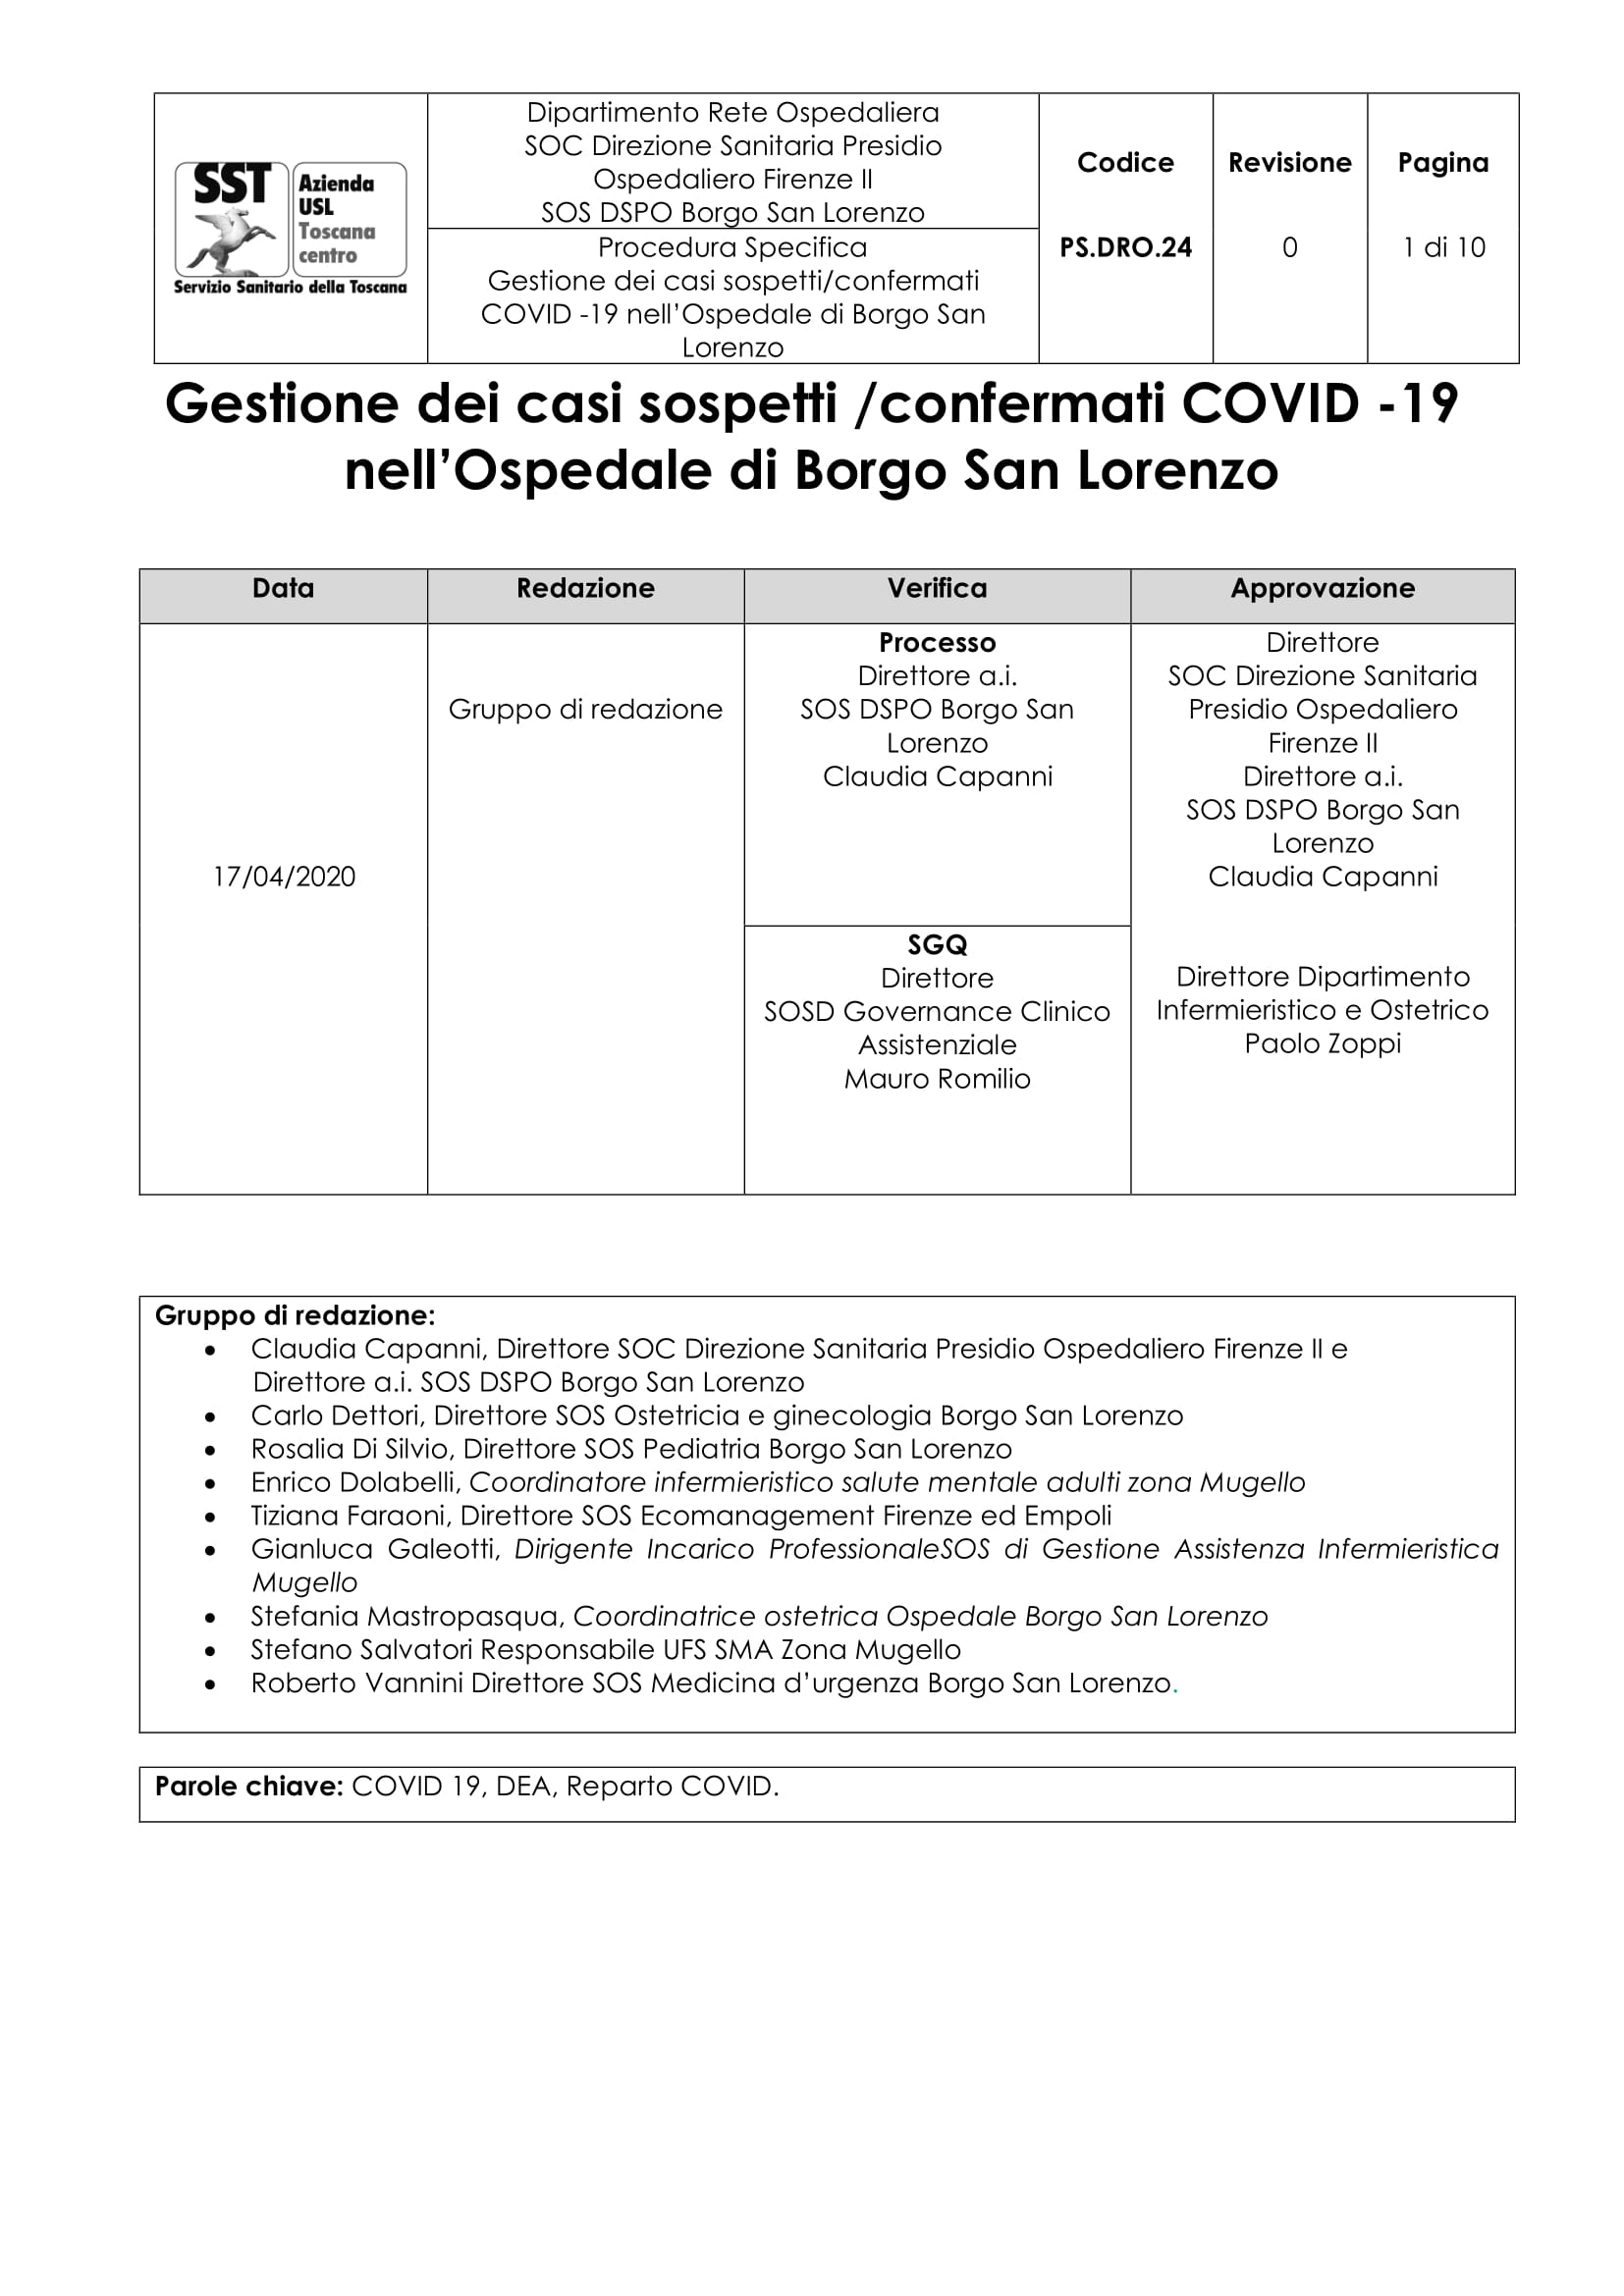 PS.DRO.24 Gestione dei casi sospetti/confermati COVID -19 nell’Ospedale di Borgo San Lorenzo